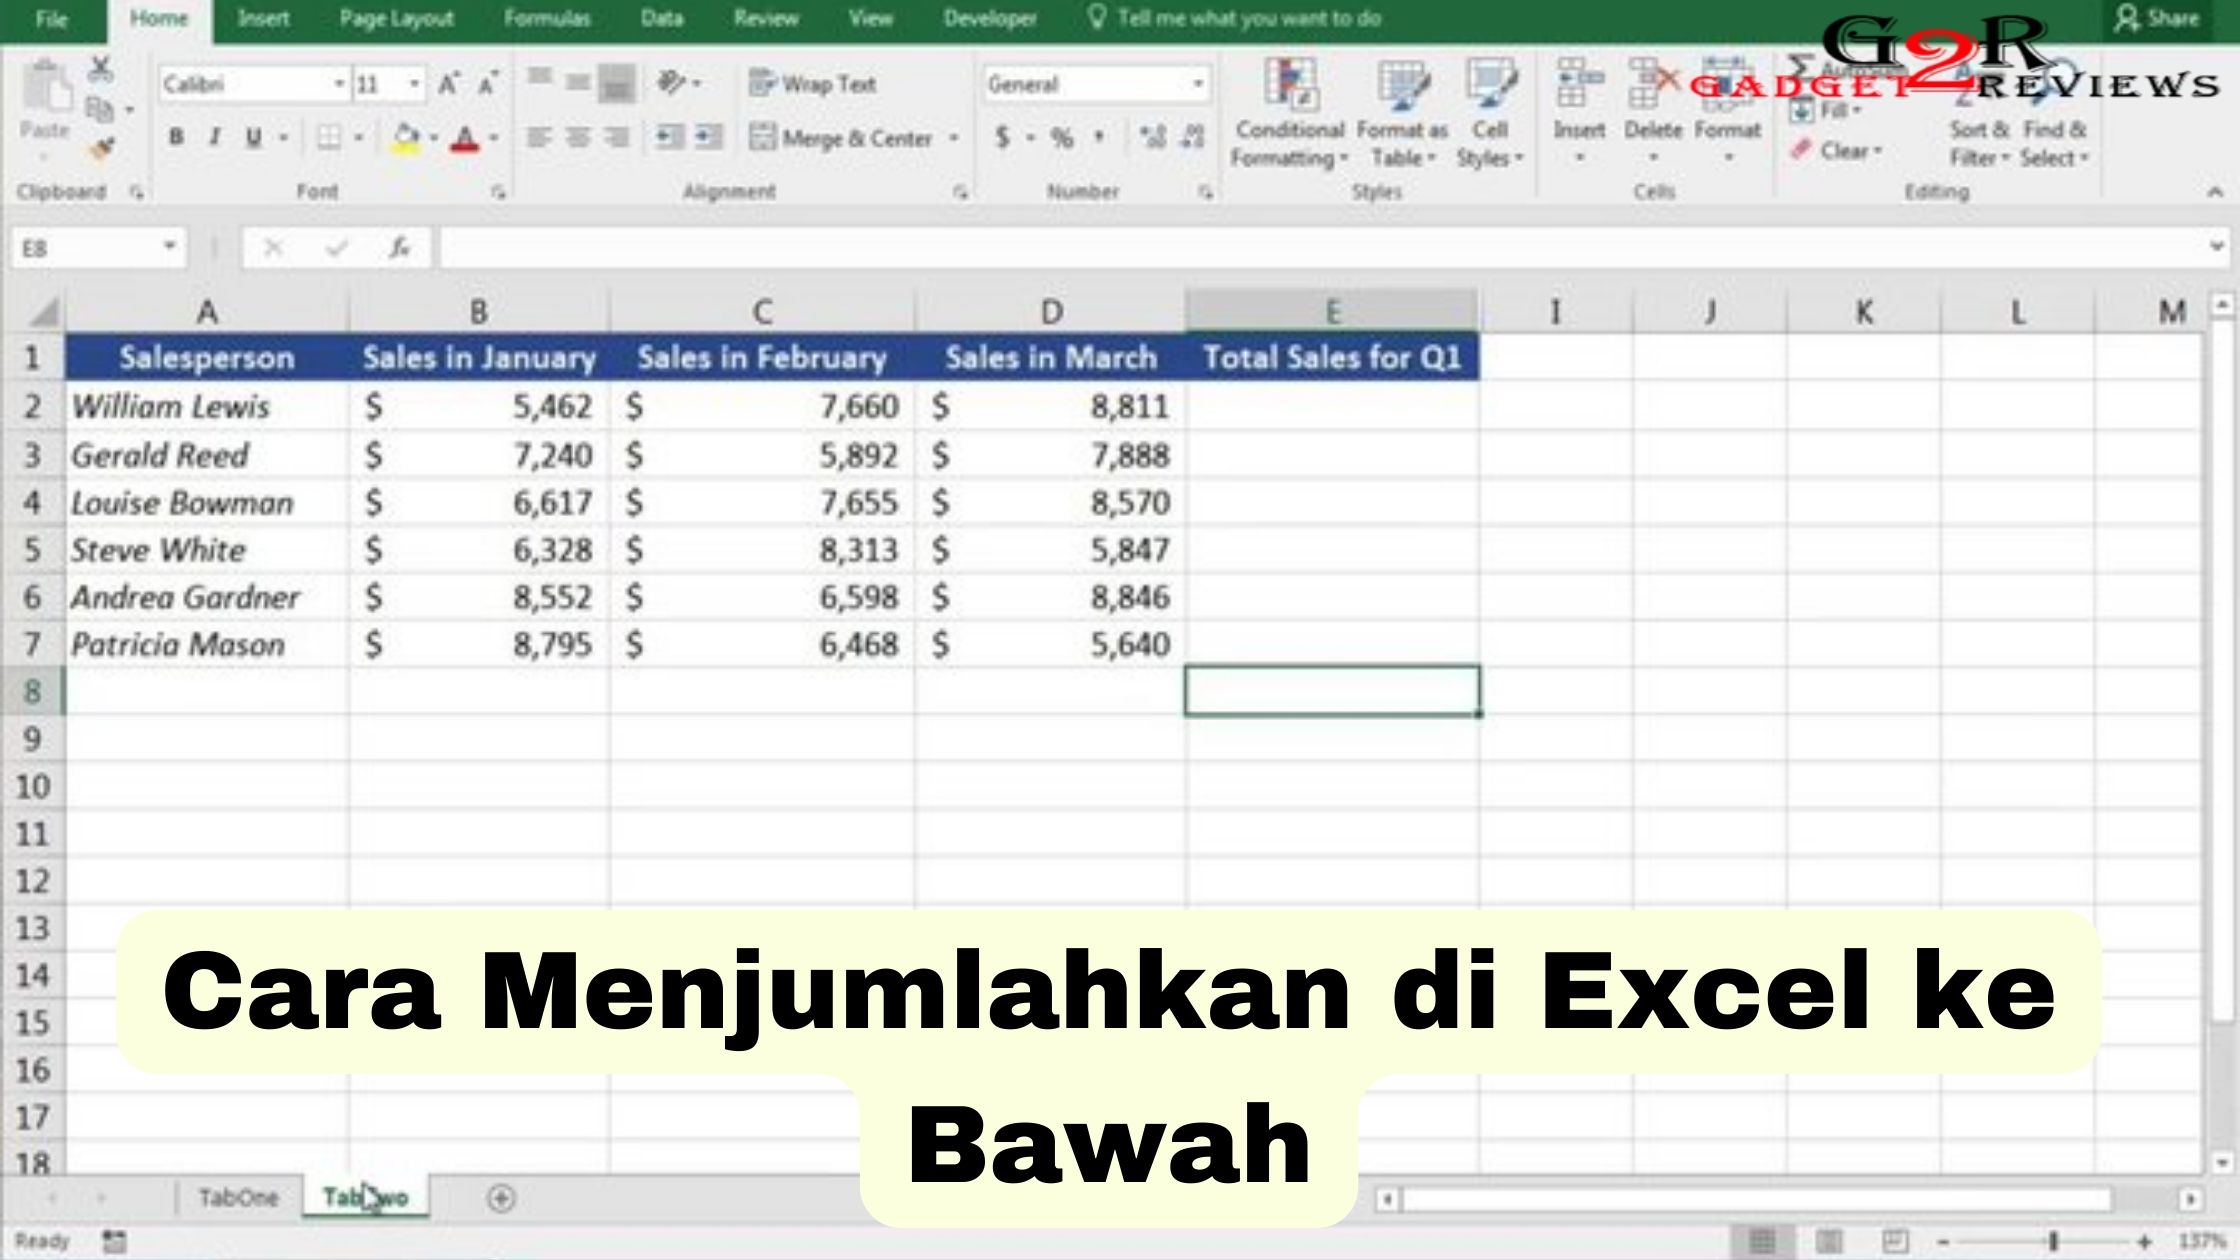 Cara Menjumlahkan Di Excel Ke Bawah Gadget Reviews